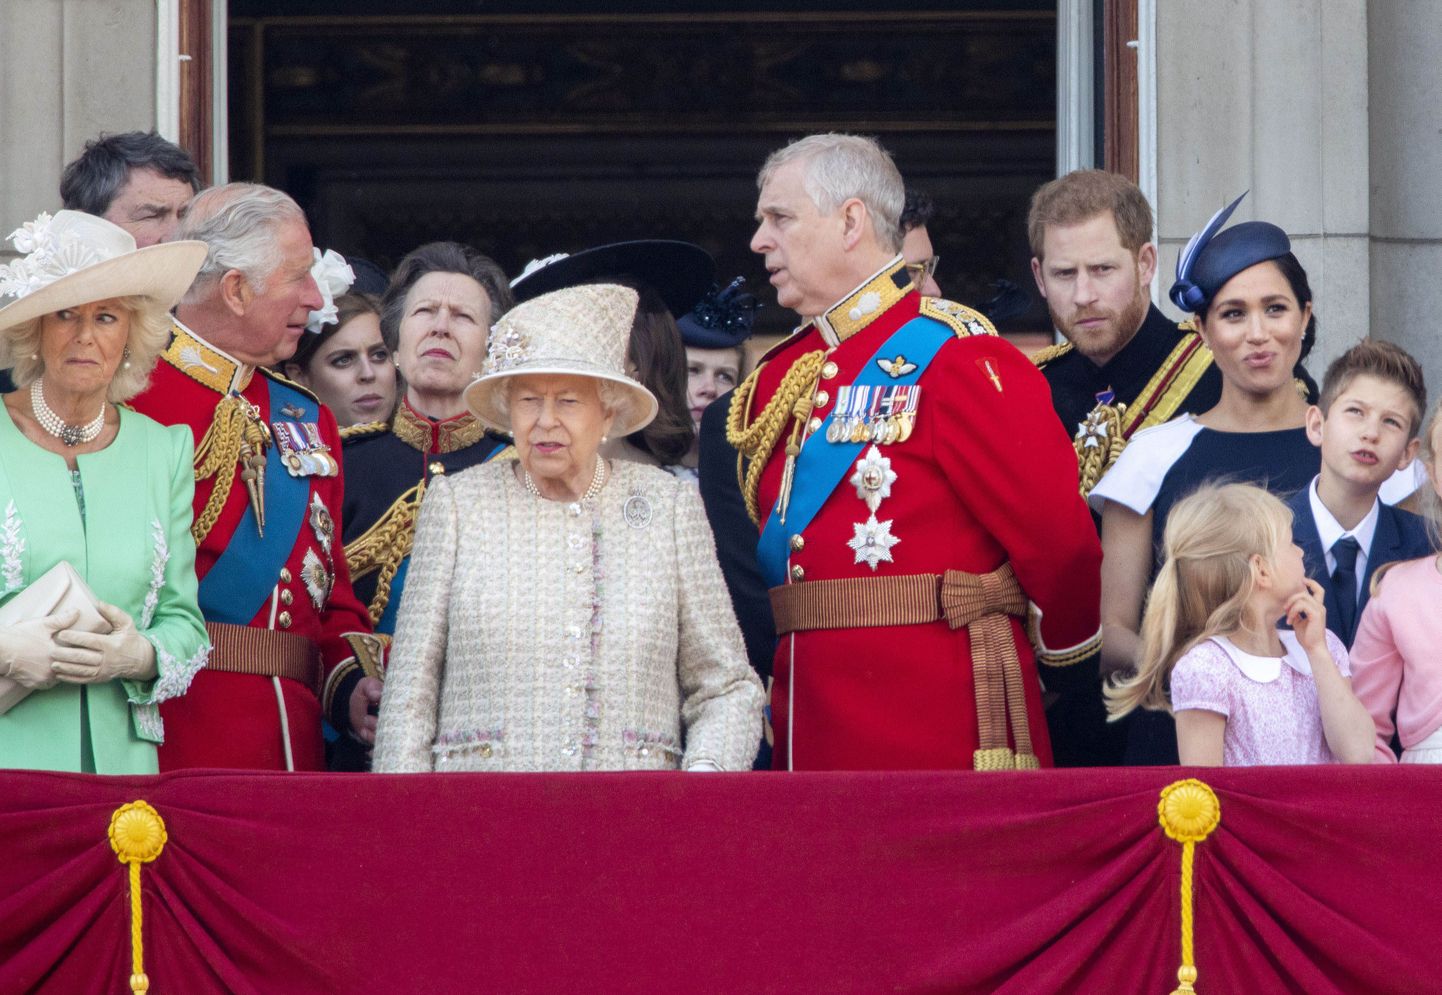 Briti kuninglik pere 8. juunil 2019 Elizabeth II sünnipäevapidustuste ajal Buckinghami palee rõdul. Harry ja Meghan on paremal